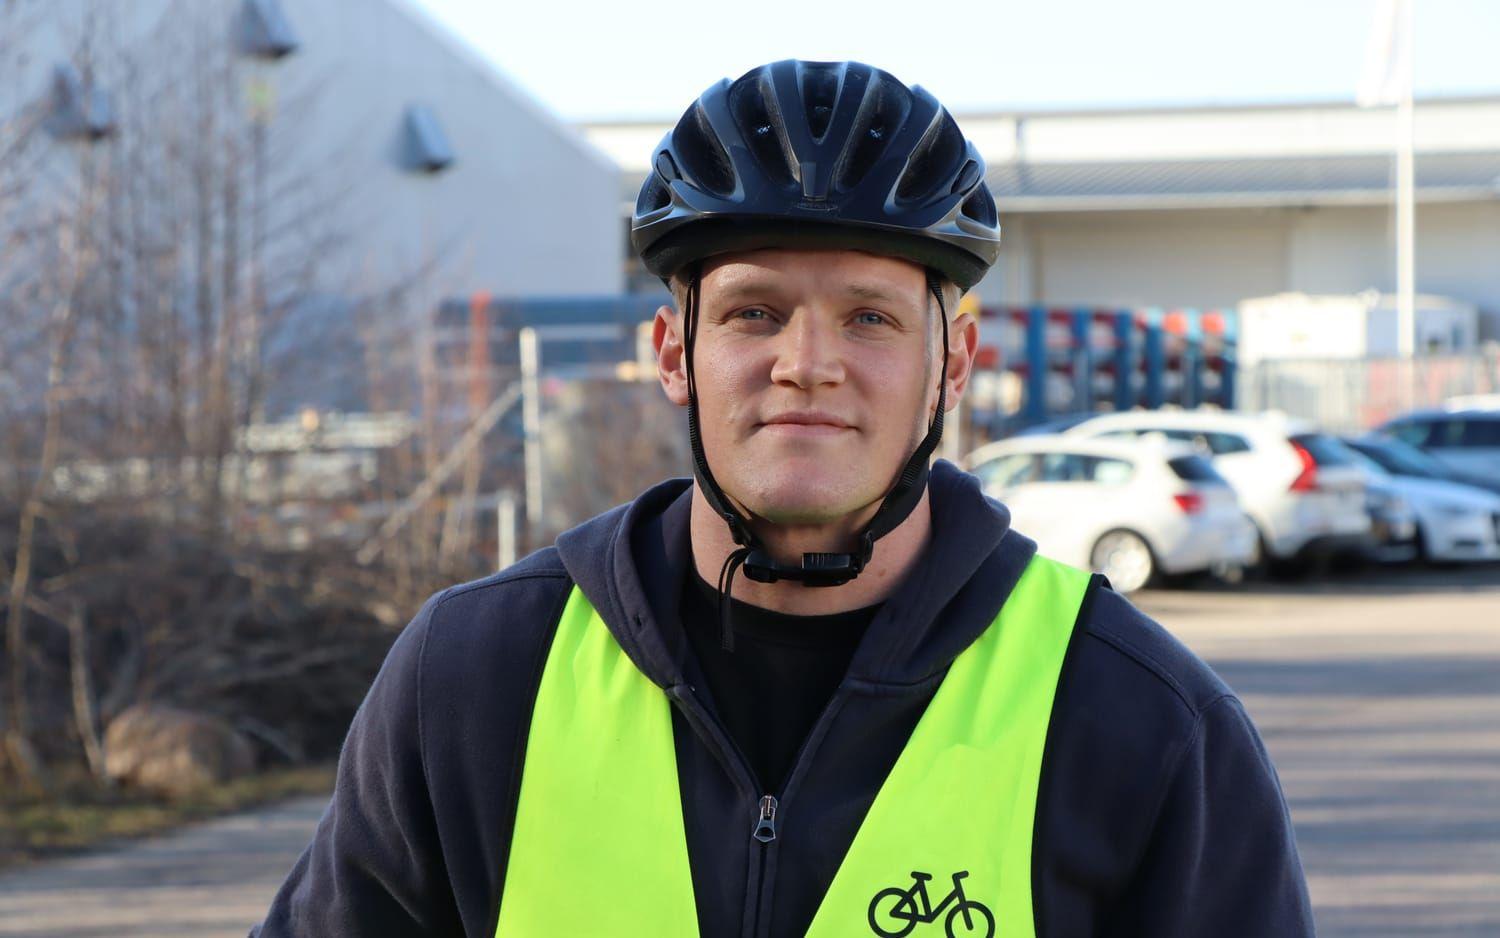 ”Jag har lärt mig att ta det lugnt när jag cyklar. Jag stannar vid överfarter där det är lite halvfarligt och försöker få ögonkontakt med bilister säger Jesper Skog.